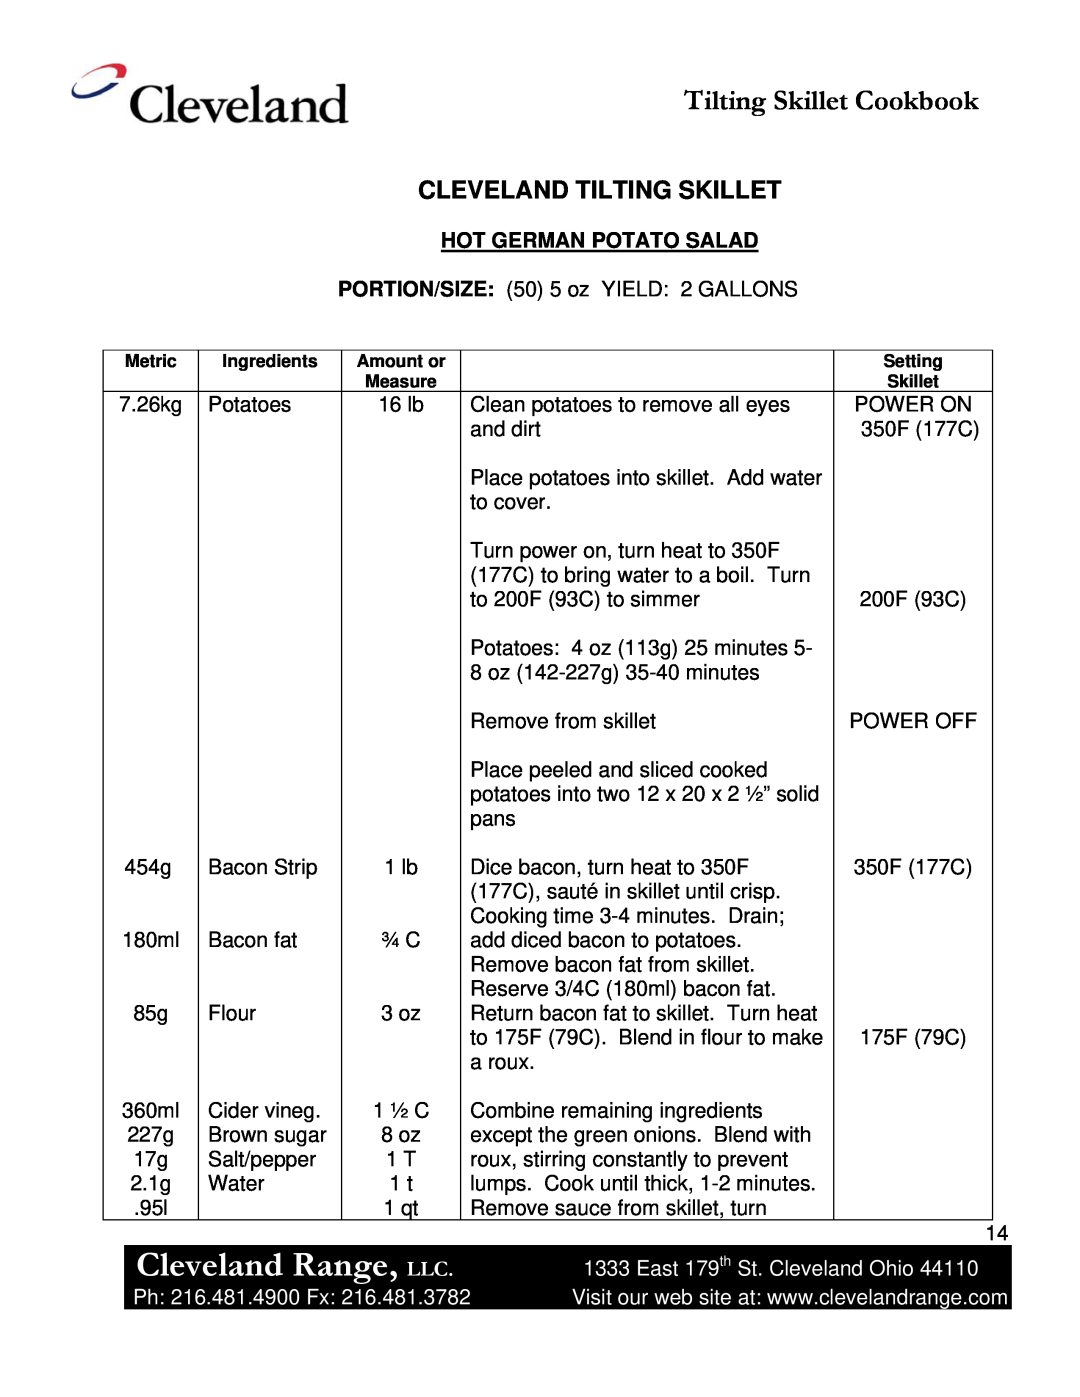 Cleveland Range Skillet/Braising manual Cleveland Range, LLC, Tilting Skillet Cookbook, Cleveland Tilting Skillet 